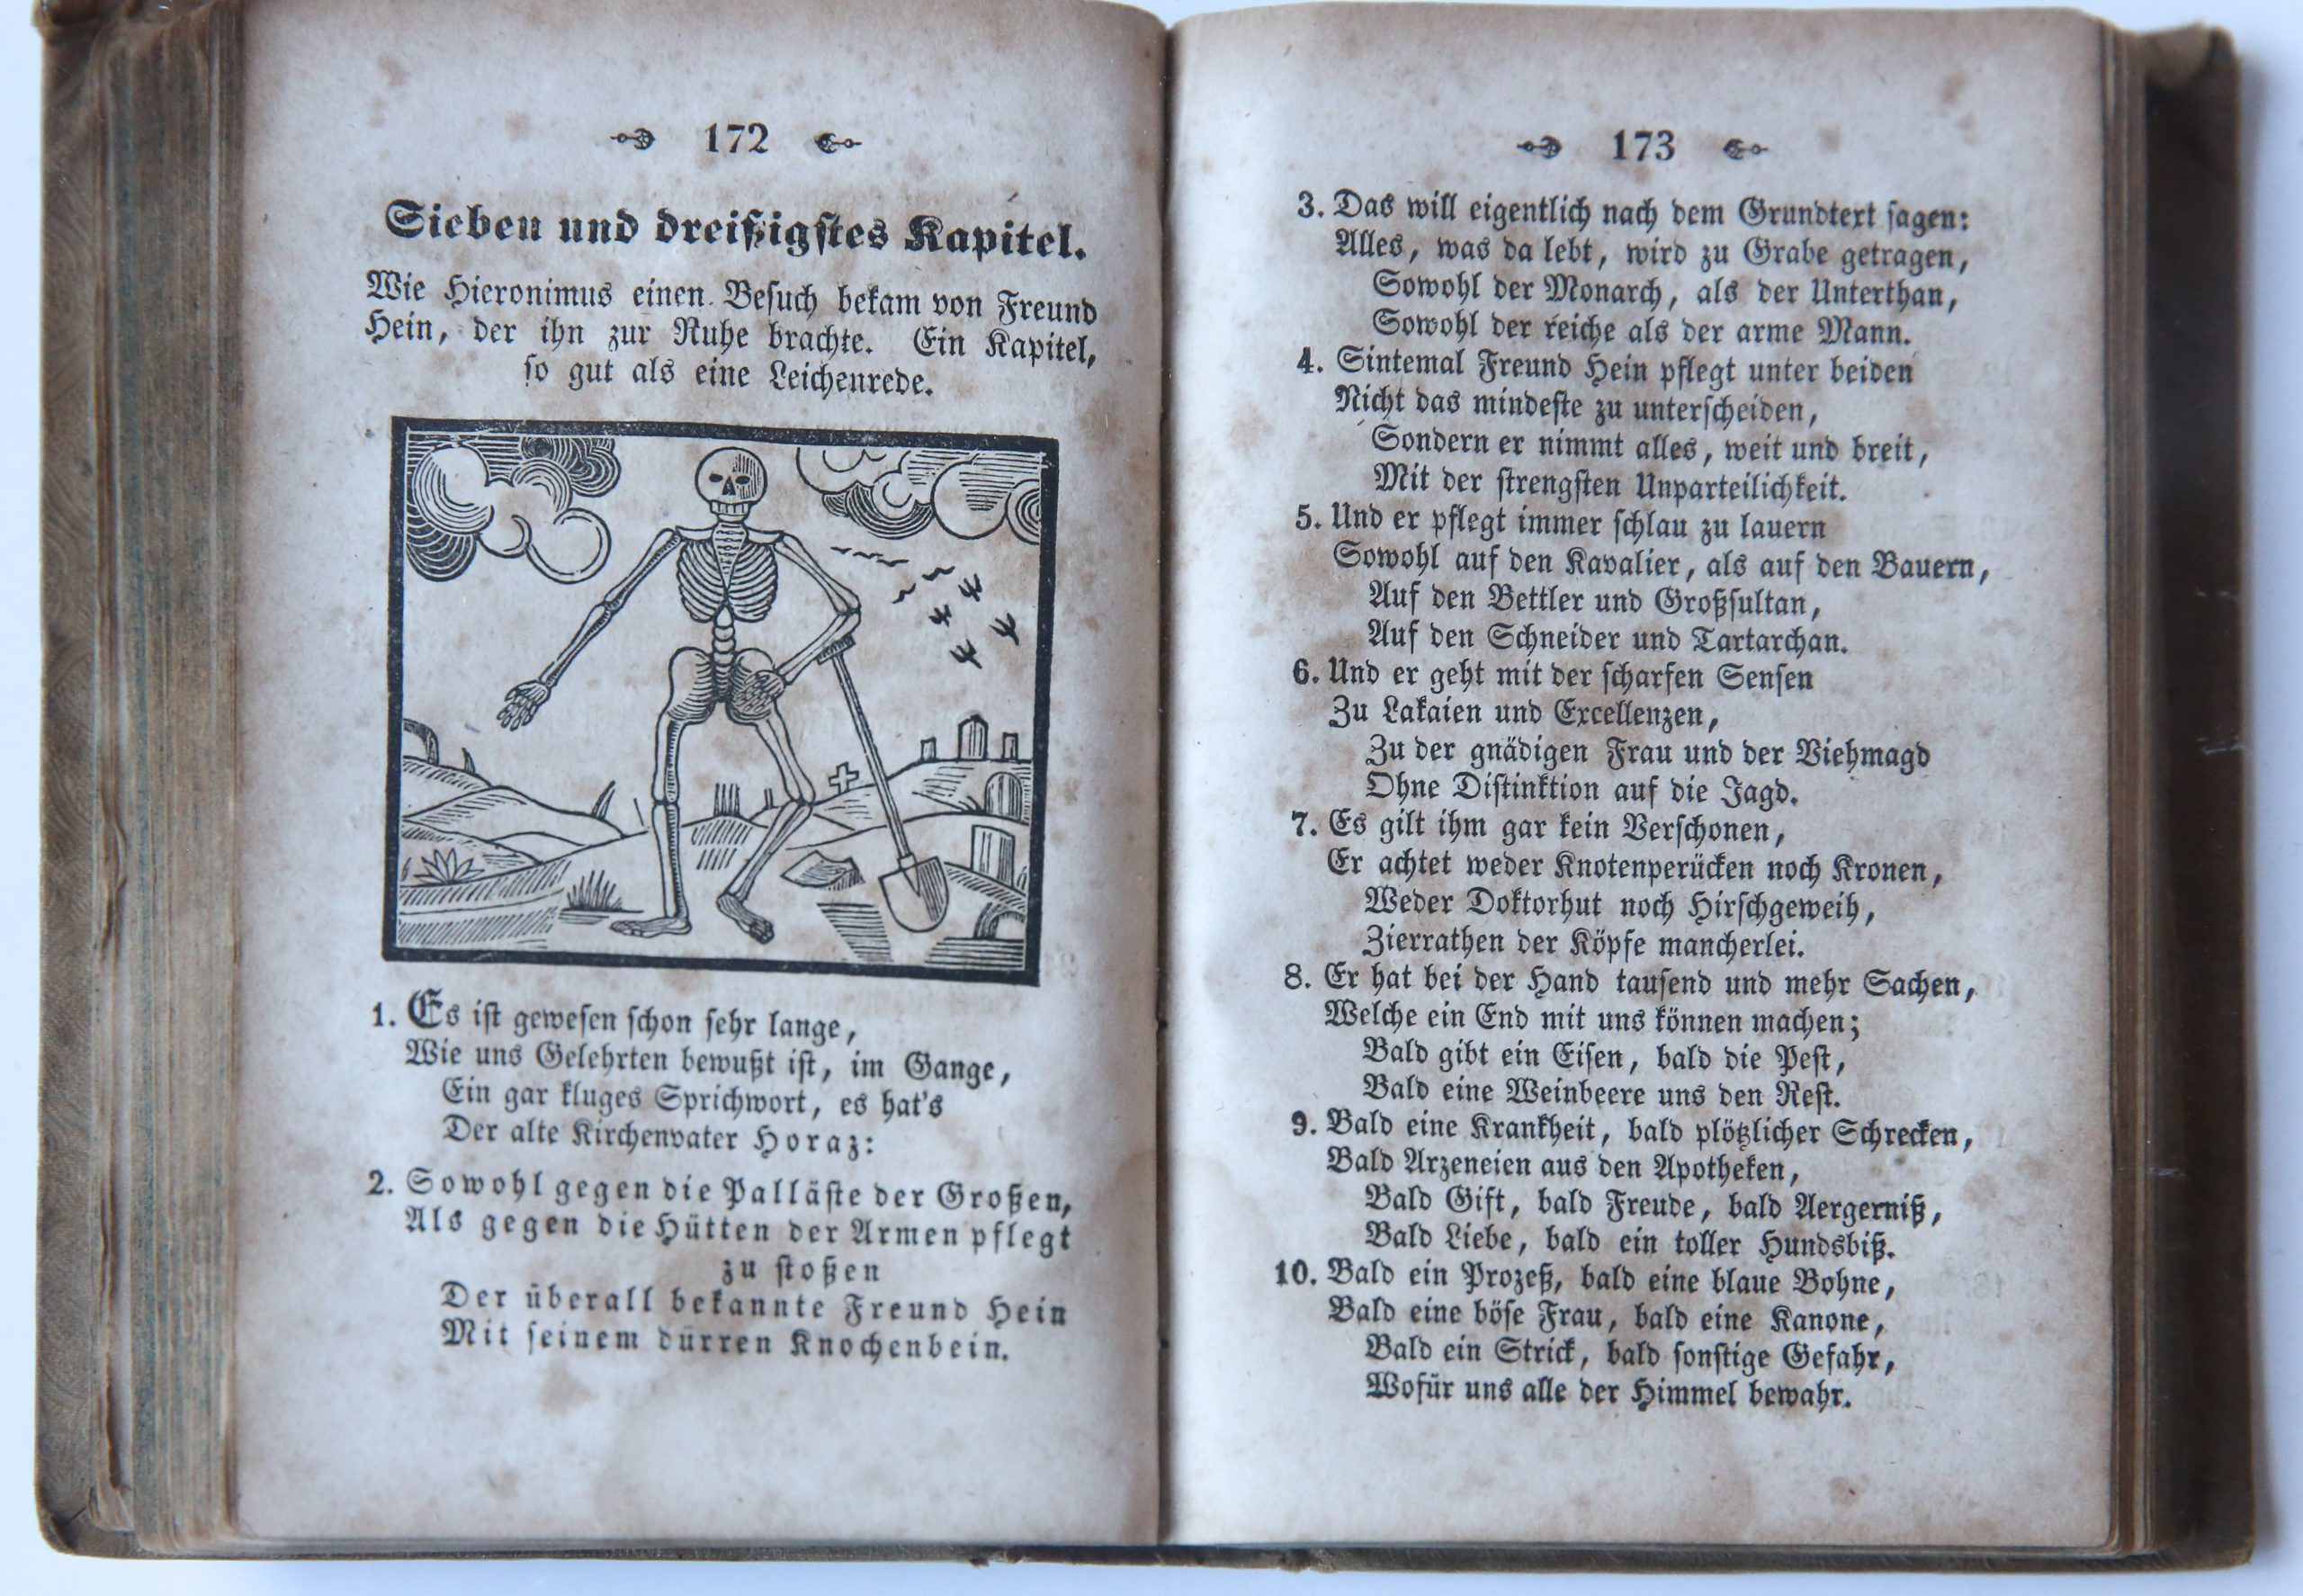 [Kortum], - Die Jobsiade. Ein grotesk-komisches Heldengedicht in drei theilen von Dr. E.A.K. , three parts in 1 volume, 5e auflage, Hamm 1839.